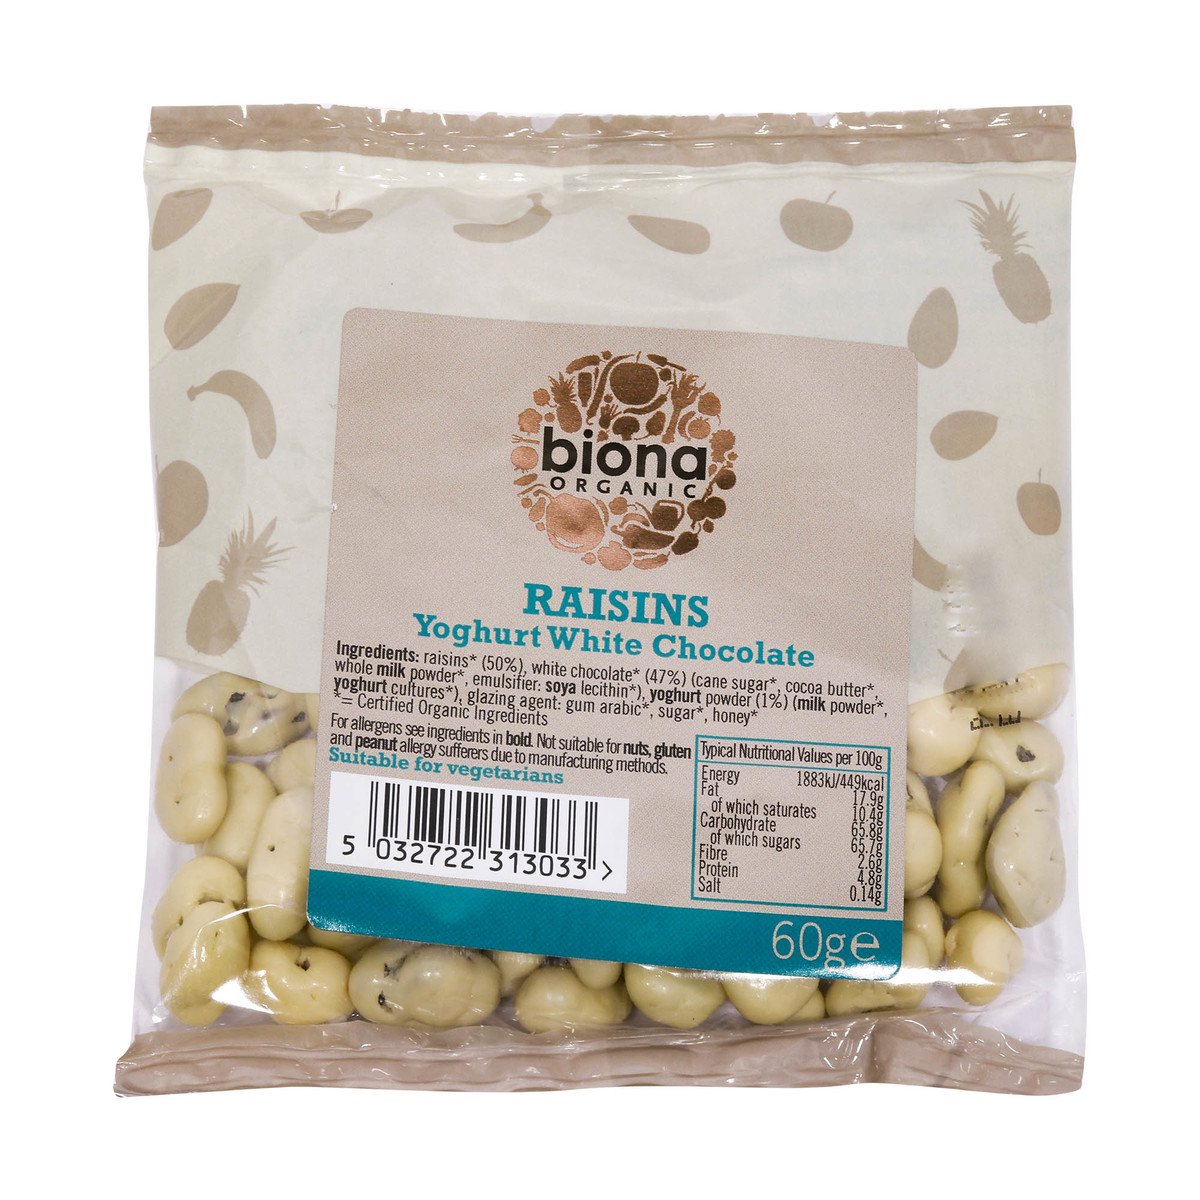 Biona Organic Raisins Yoghurt White Chocolate 60g